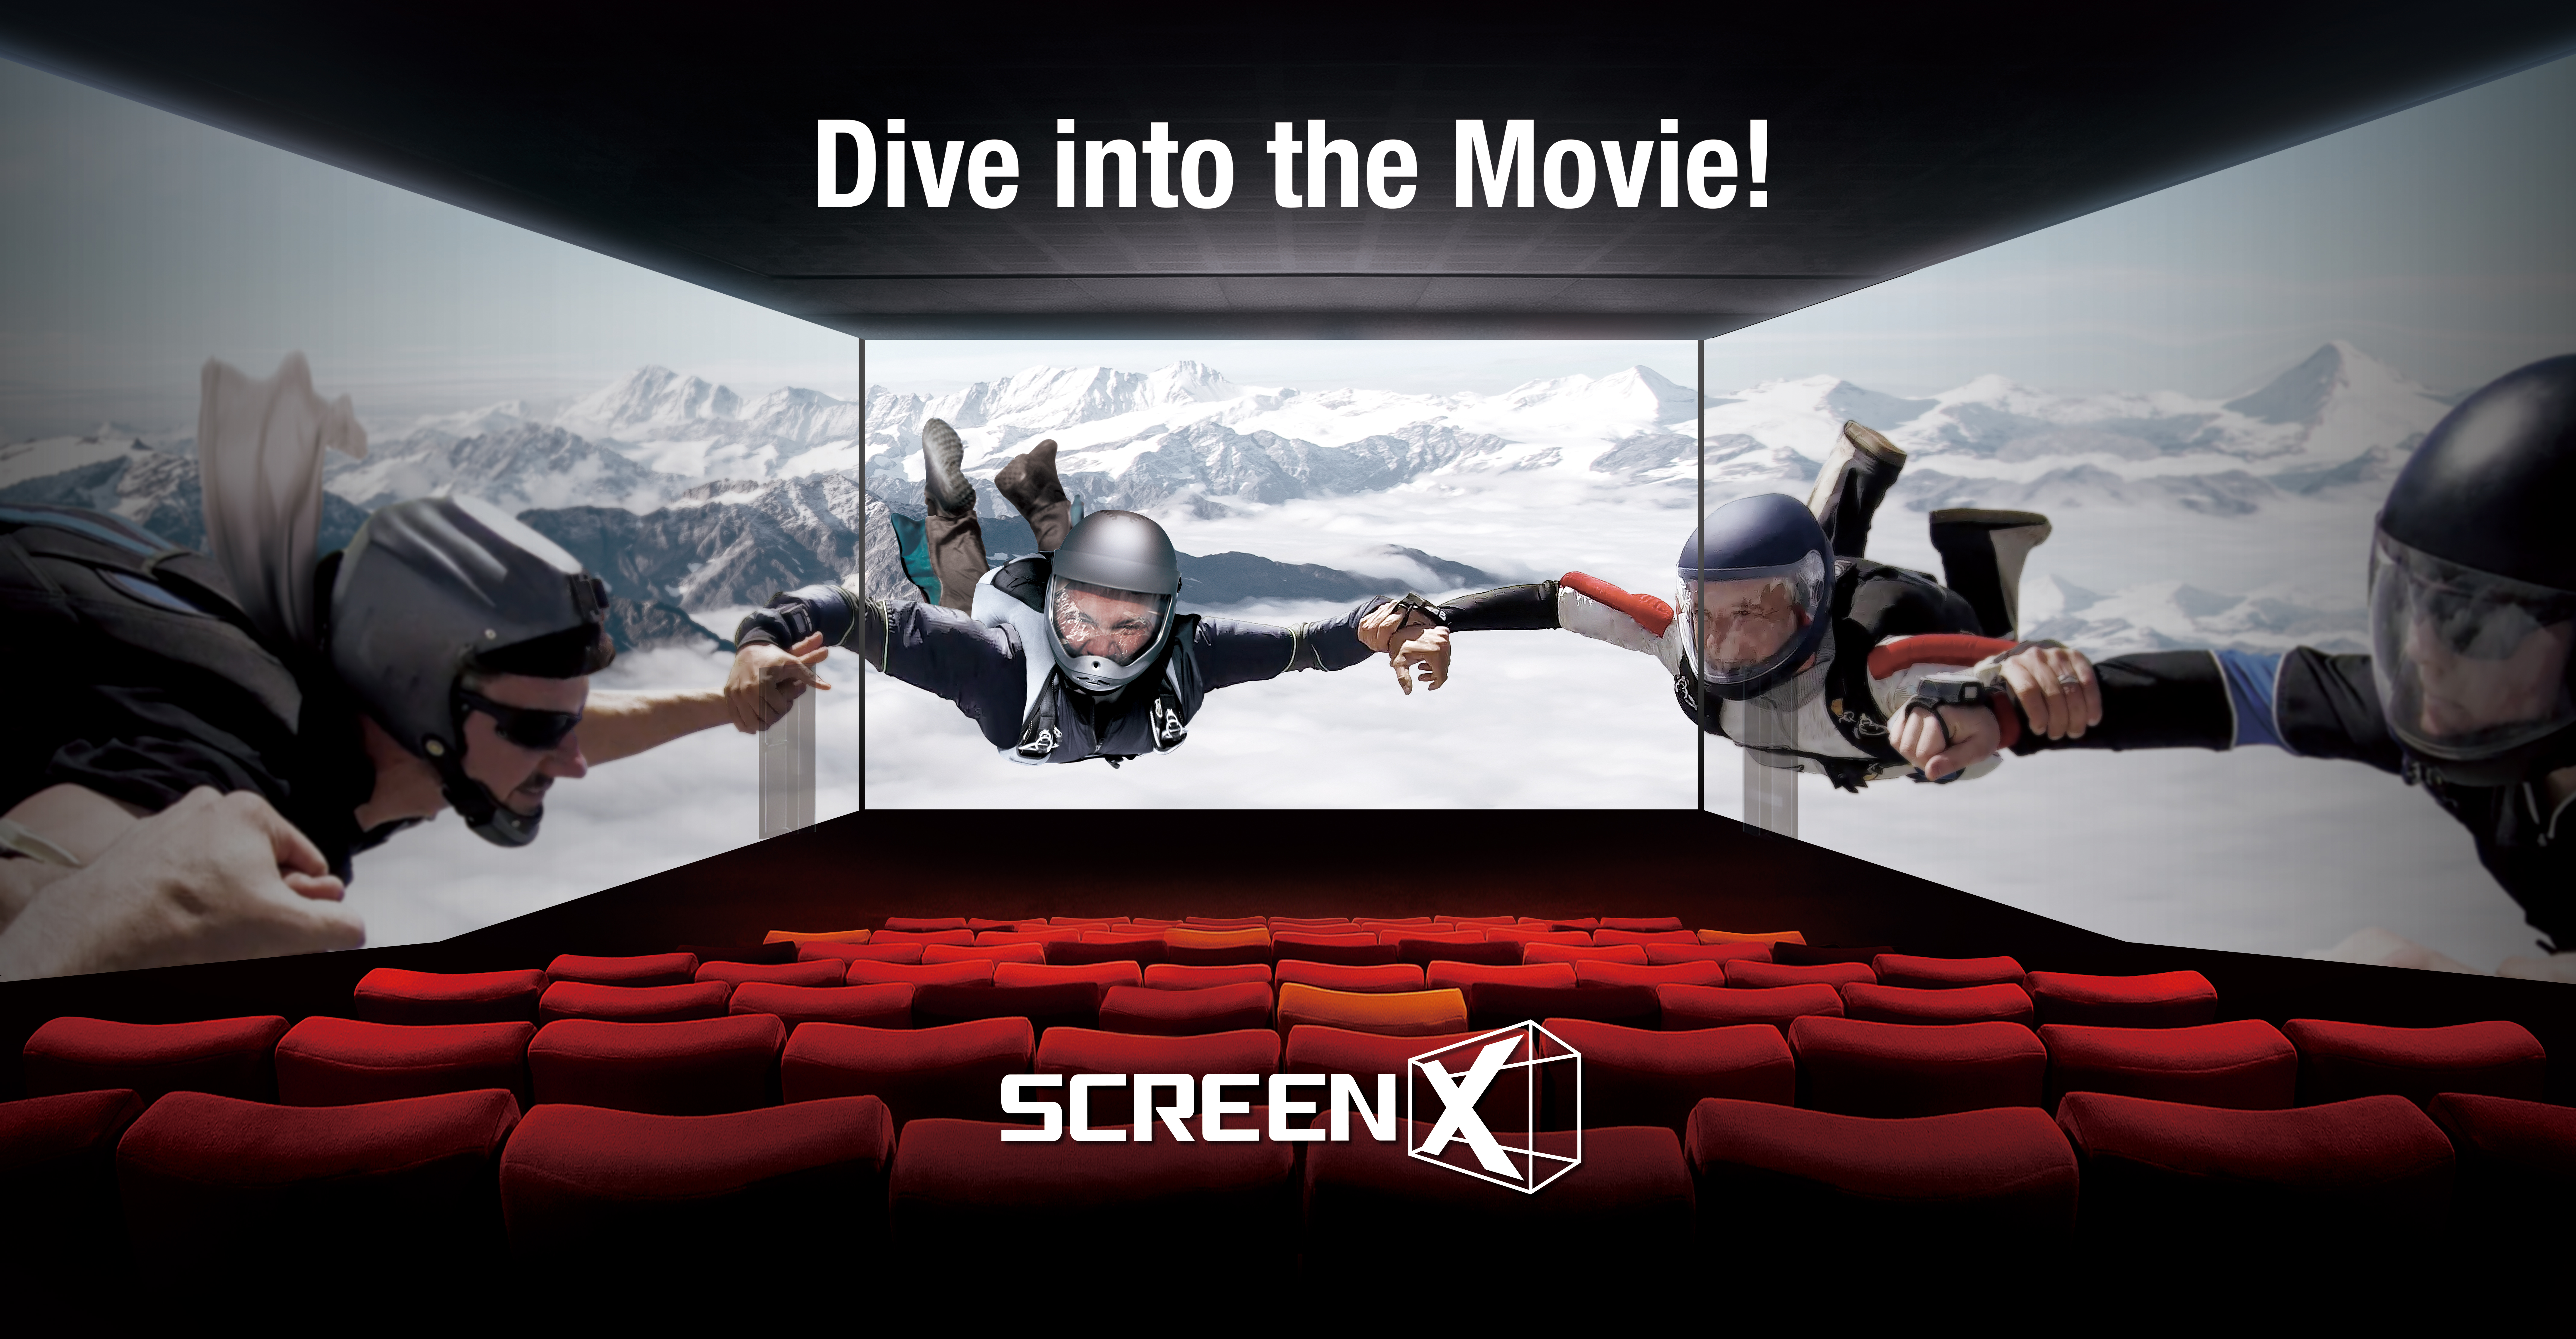 秀泰集团引进的「ScreenX」270°全景放映技术，透过投影在影厅两侧银幕，将观影可视银幕尺寸延伸为三面超过60公尺、270°全景包覆感受。图／秀泰集团提供